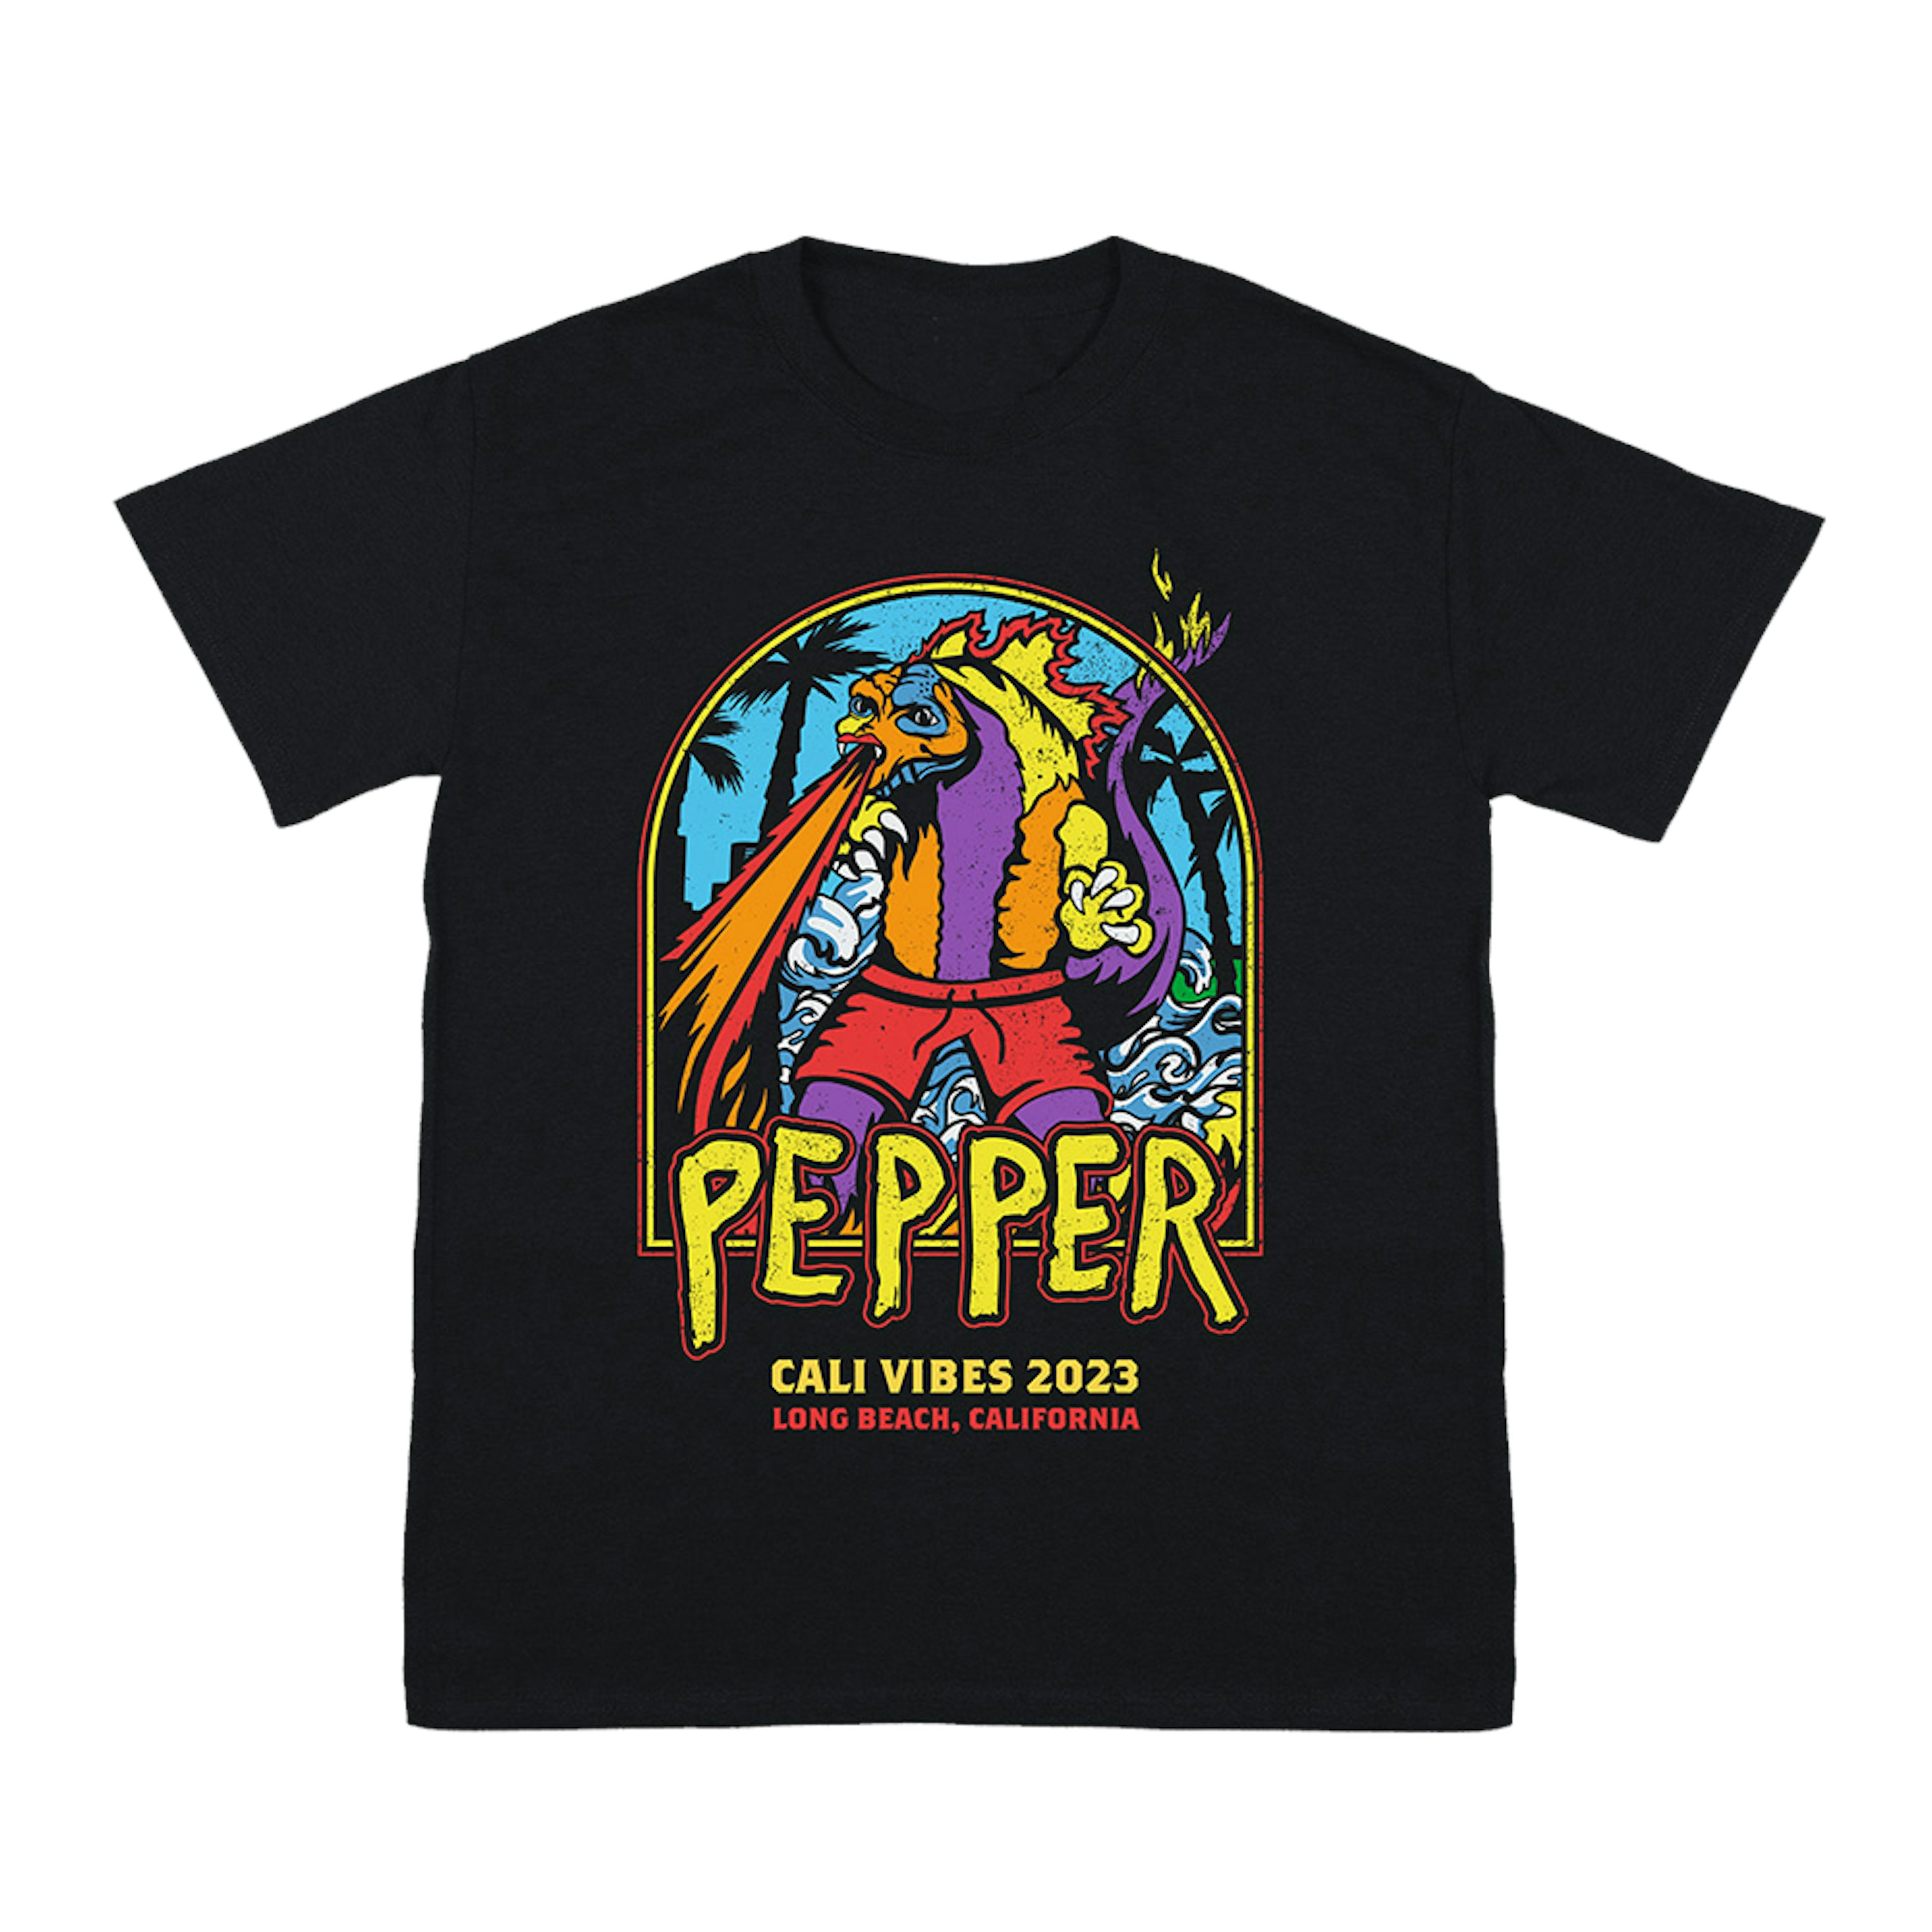 Pepper Cali Vibes 2023 Tee